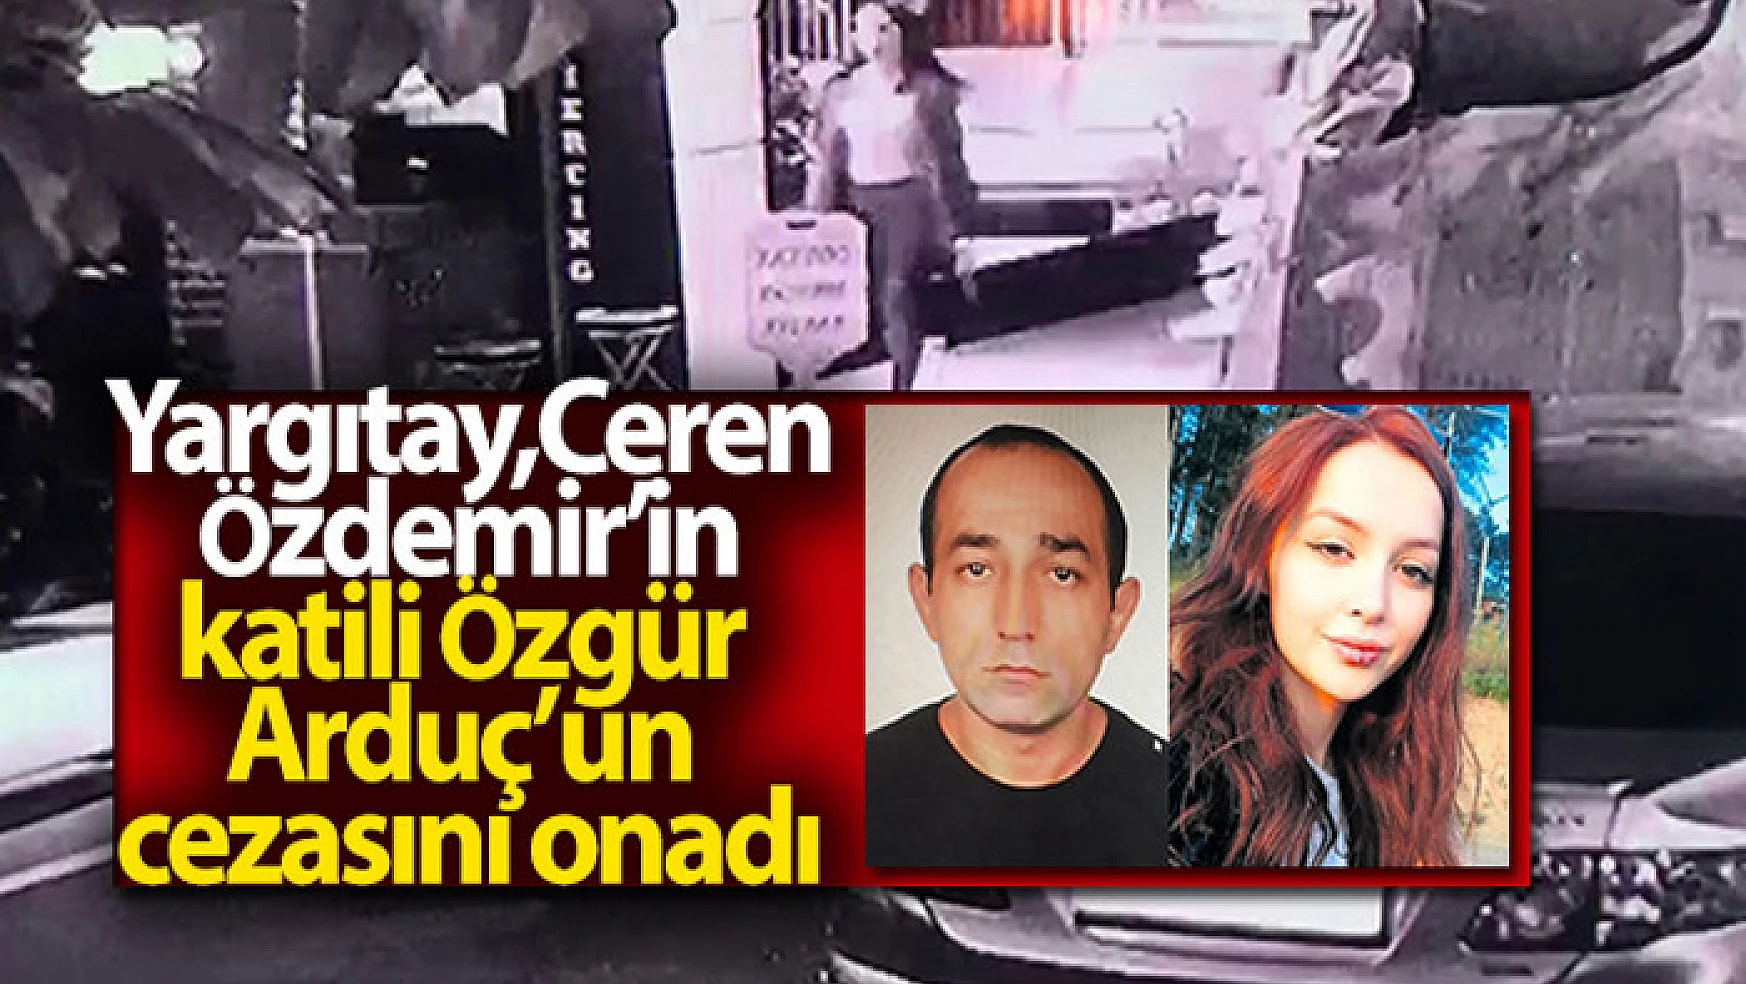 Yargıtay, Ceren Özdemir'in katili Özgür Arduç'un cezasını onadı